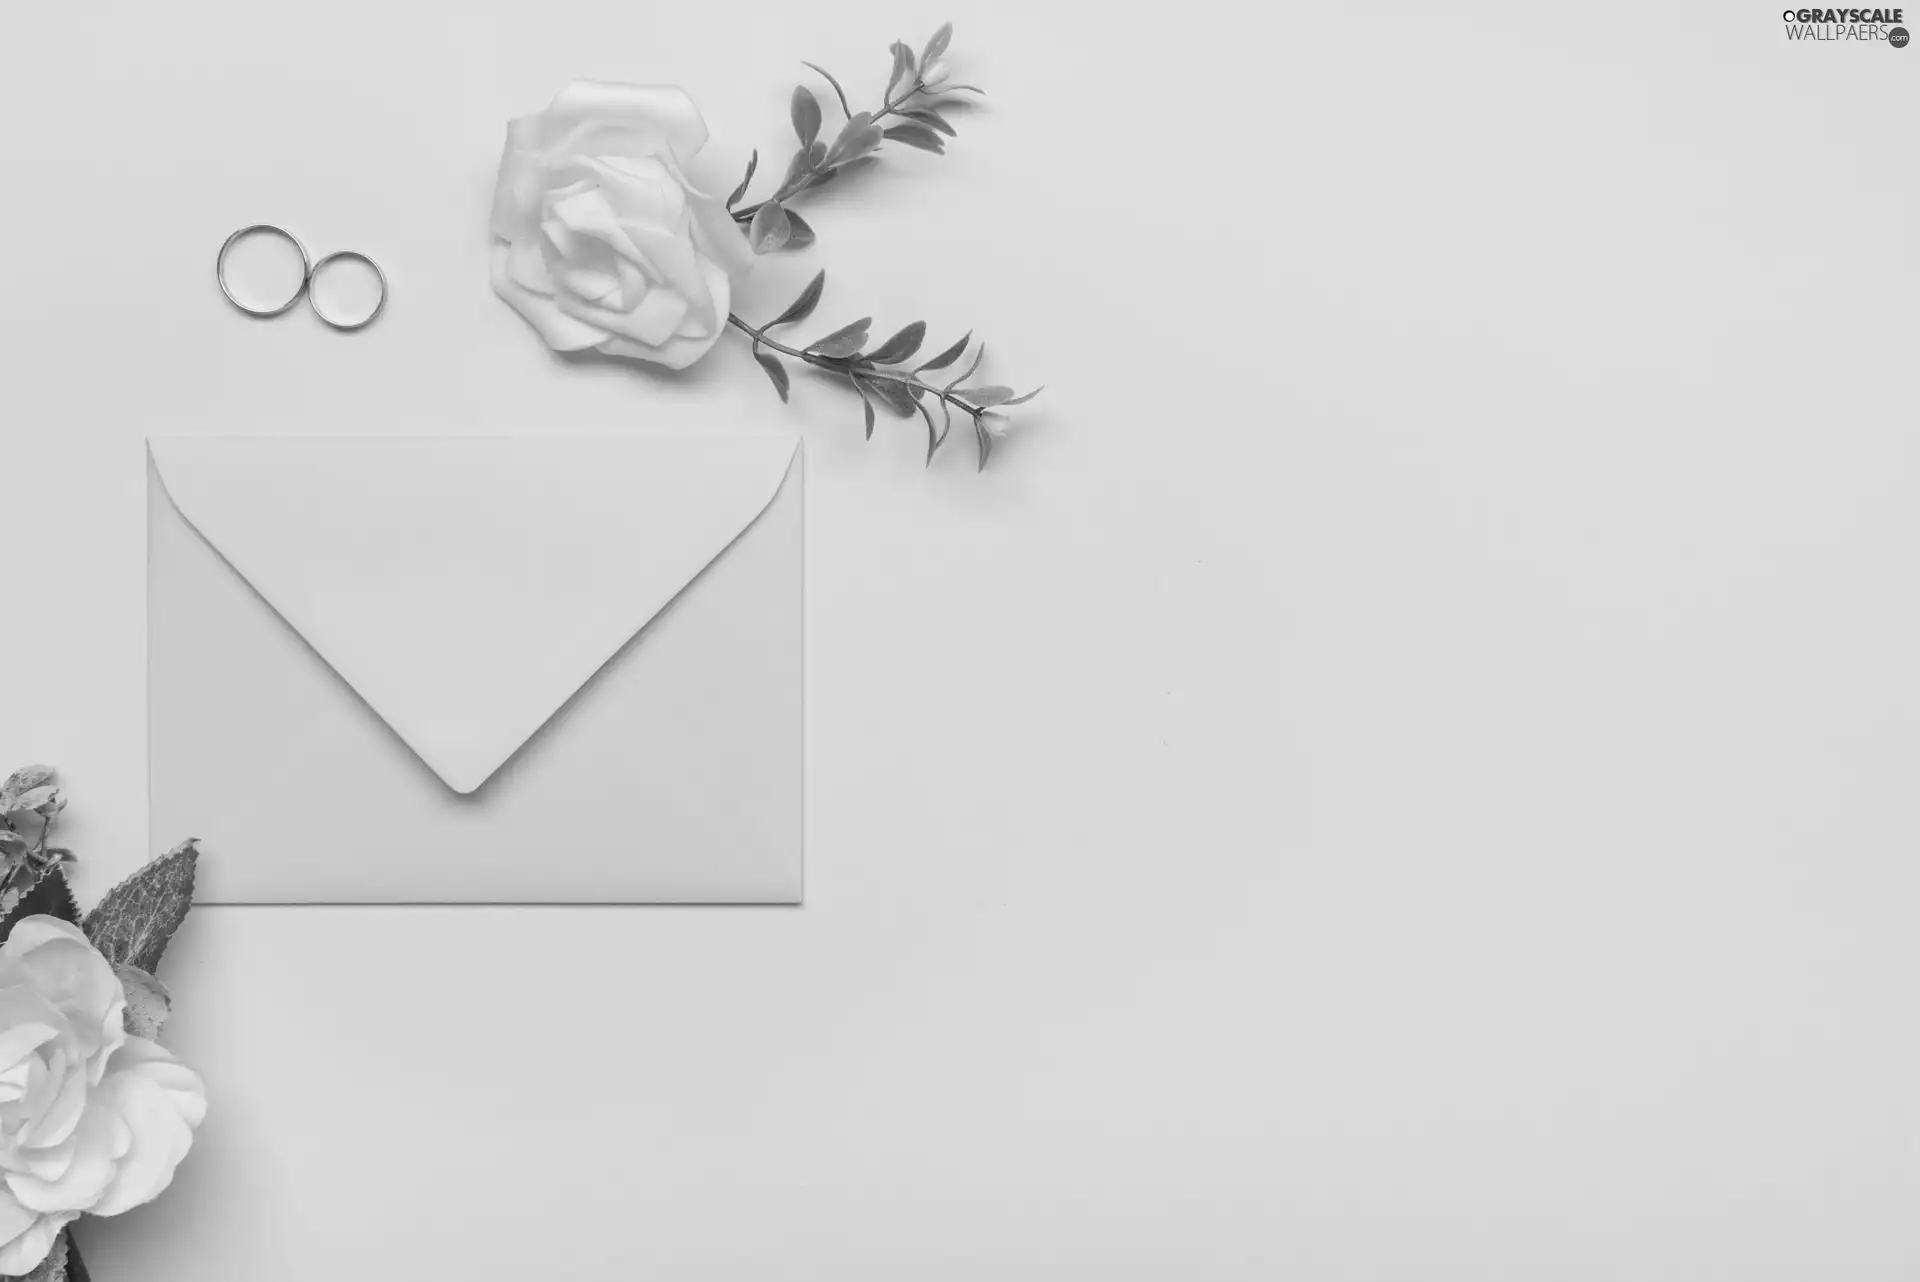 rings, envelope, Flowers, roses, marriage